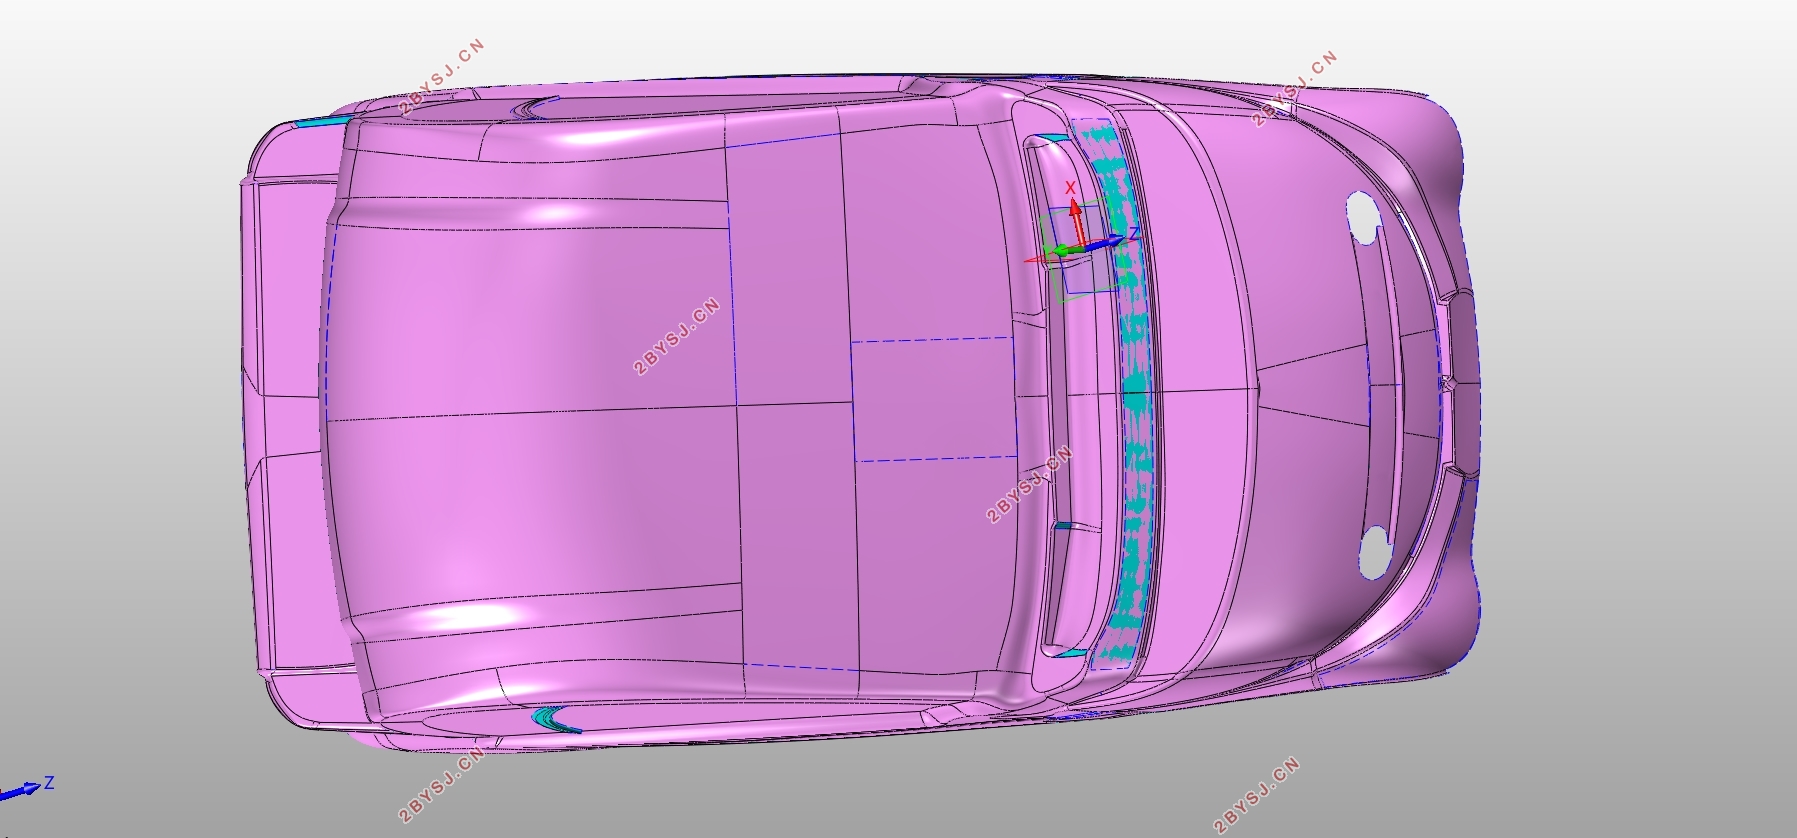 微型两座电动轿车车身造型设计及空气动力学分析(含CAD图,IGS三维图)